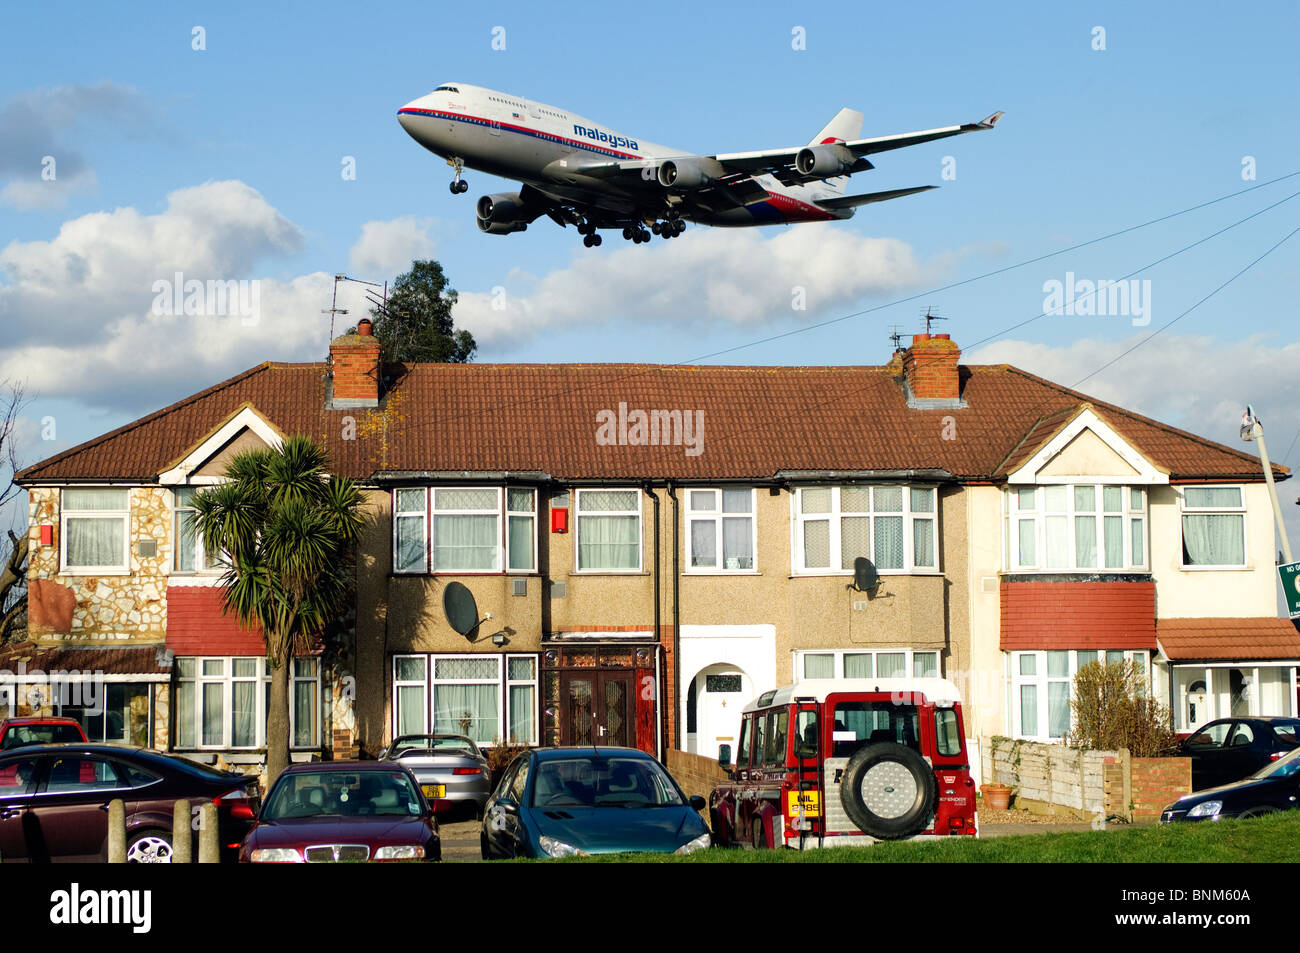 Heathrow pista approccio da parte di Boeing 747, Malaysia Airlines, sull approccio basso sopra le case per l'atterraggio all'Aeroporto di Londra Heathrow, il Mirto Avenue, Regno Unito. Foto Stock